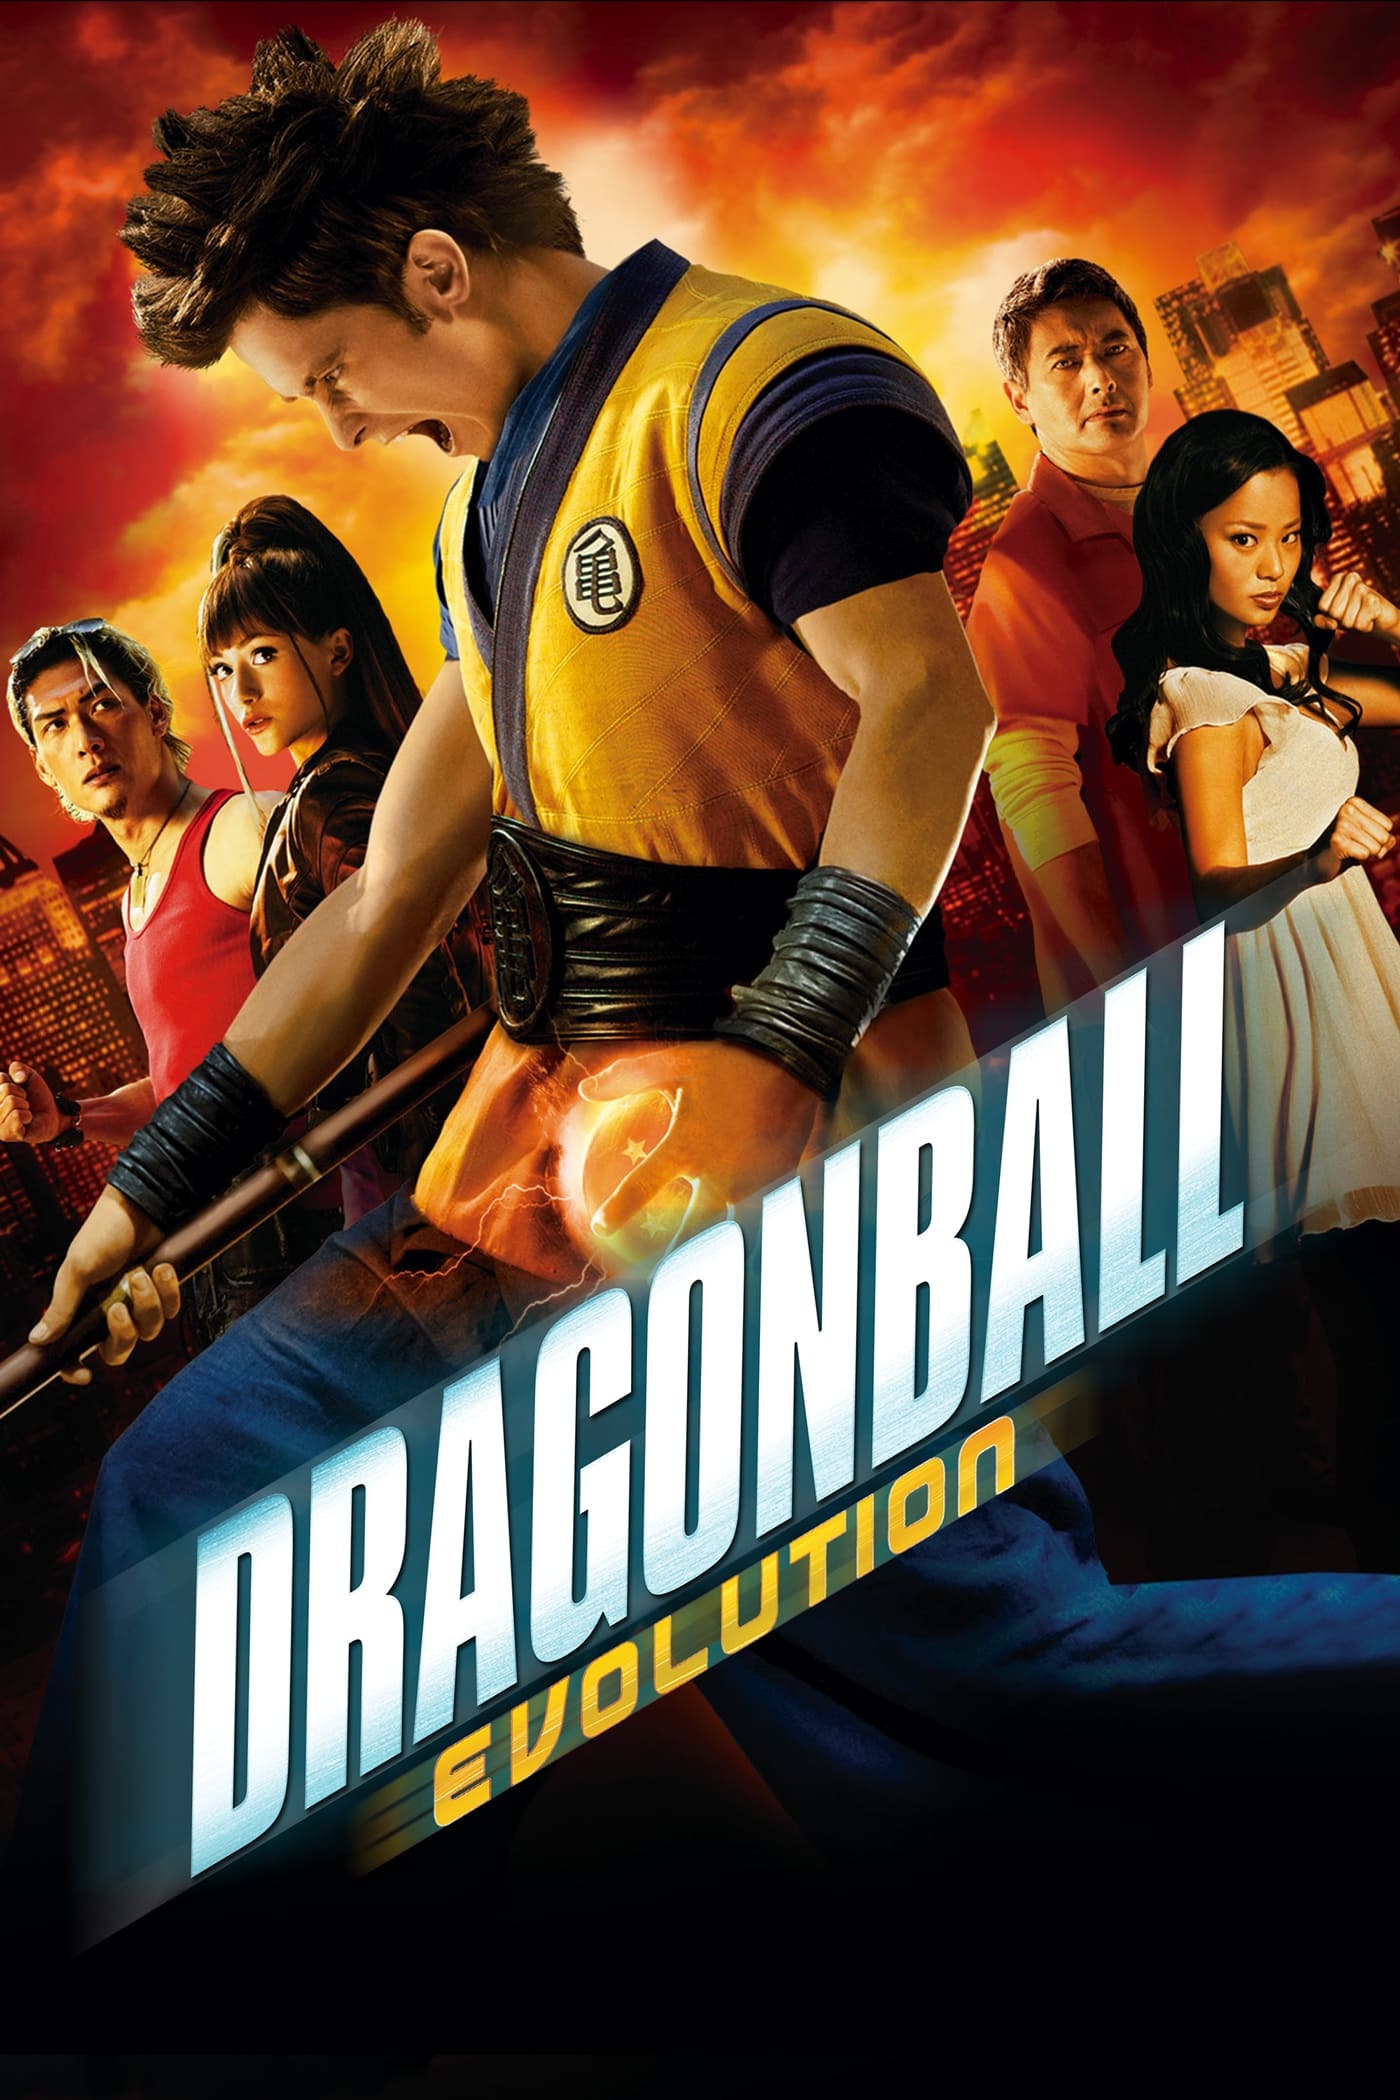 Dragonball - Evolução (2009)